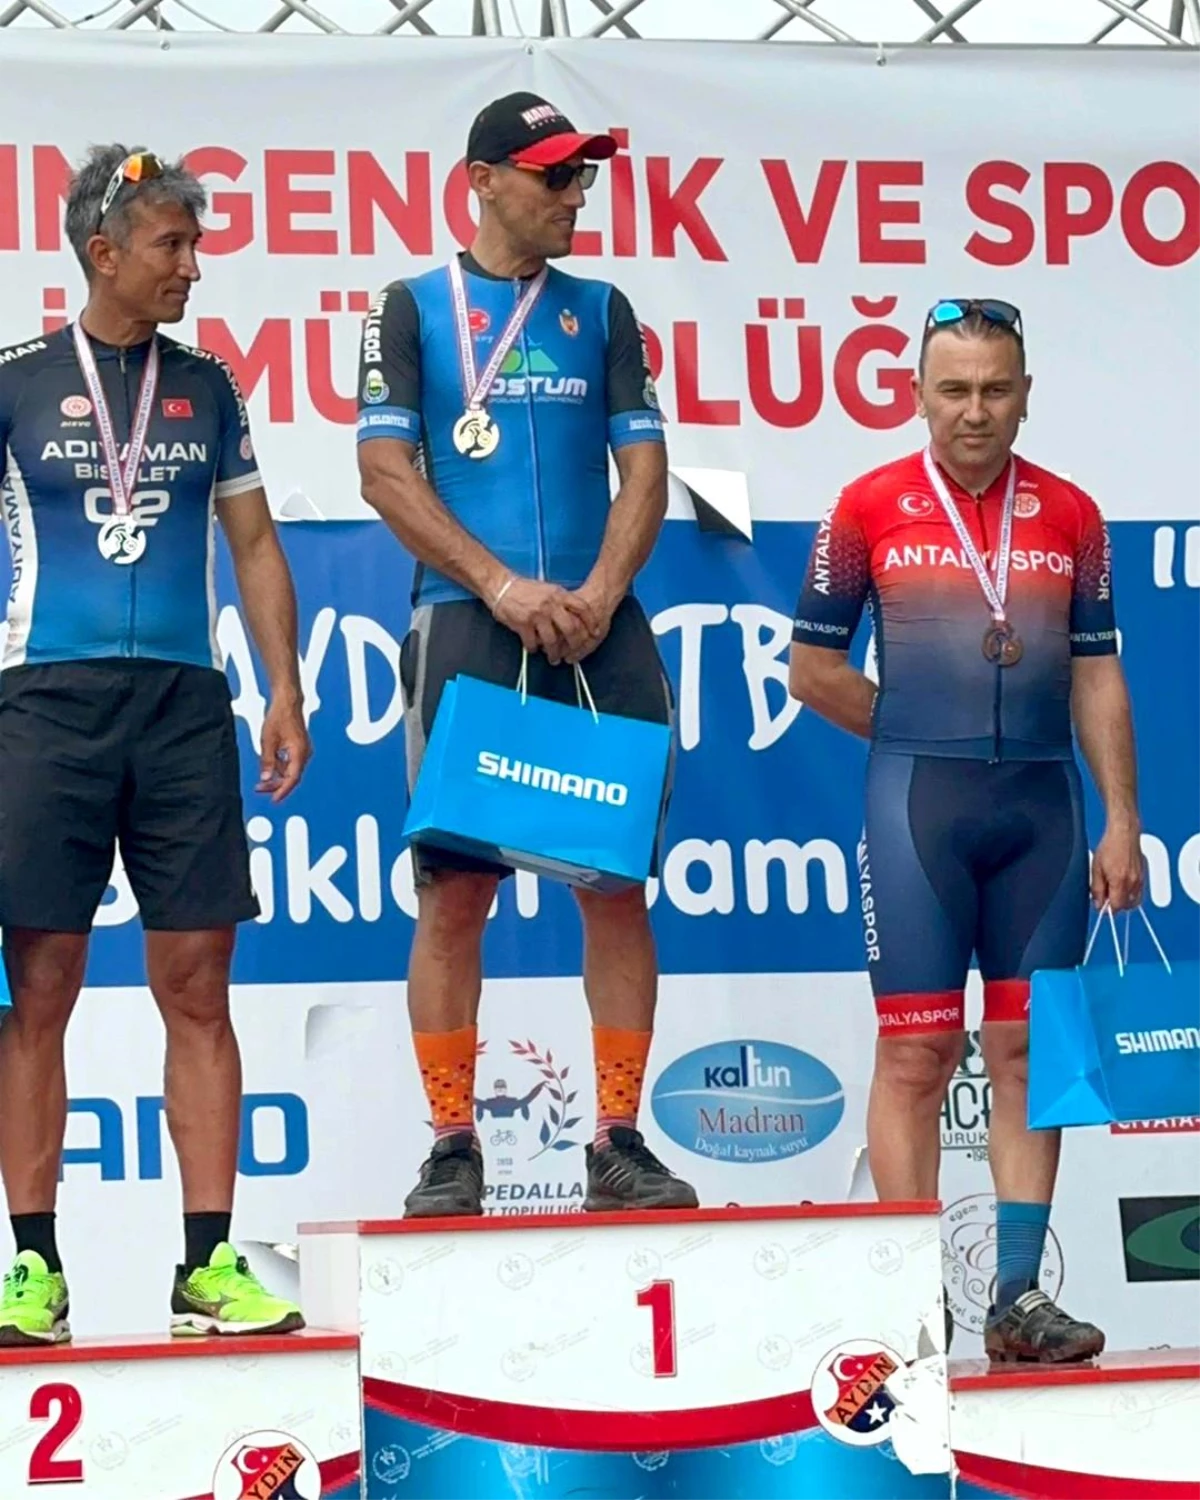 Antalyasporlu pedallar sezonu kürsüde açtı